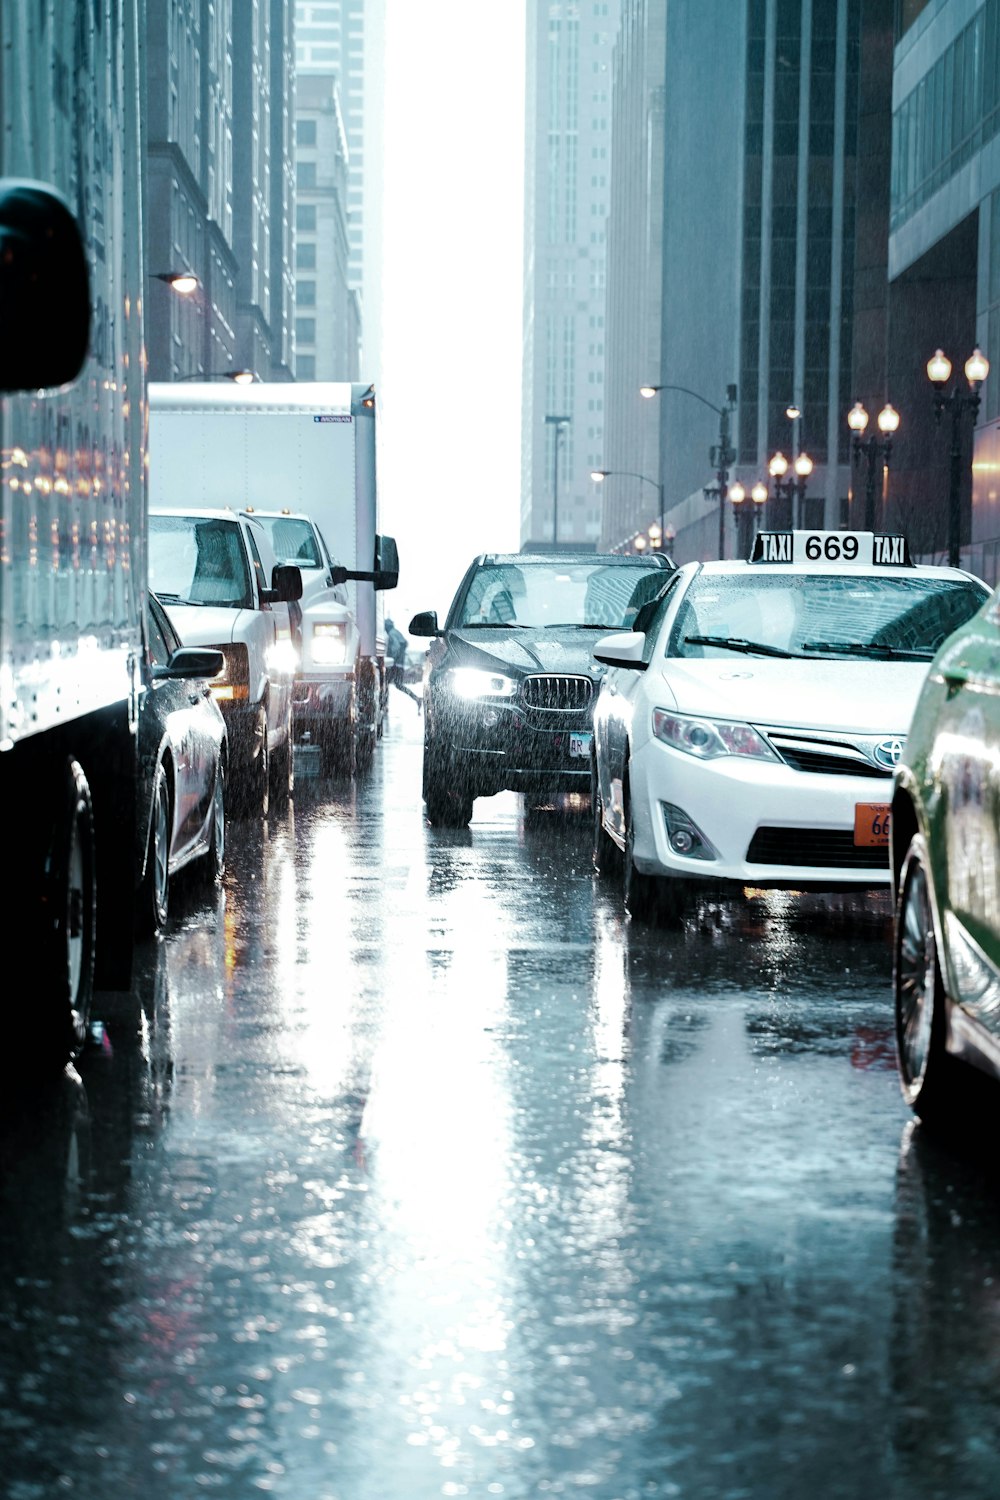 veicolo bloccato nel traffico durante la giornata di pioggia